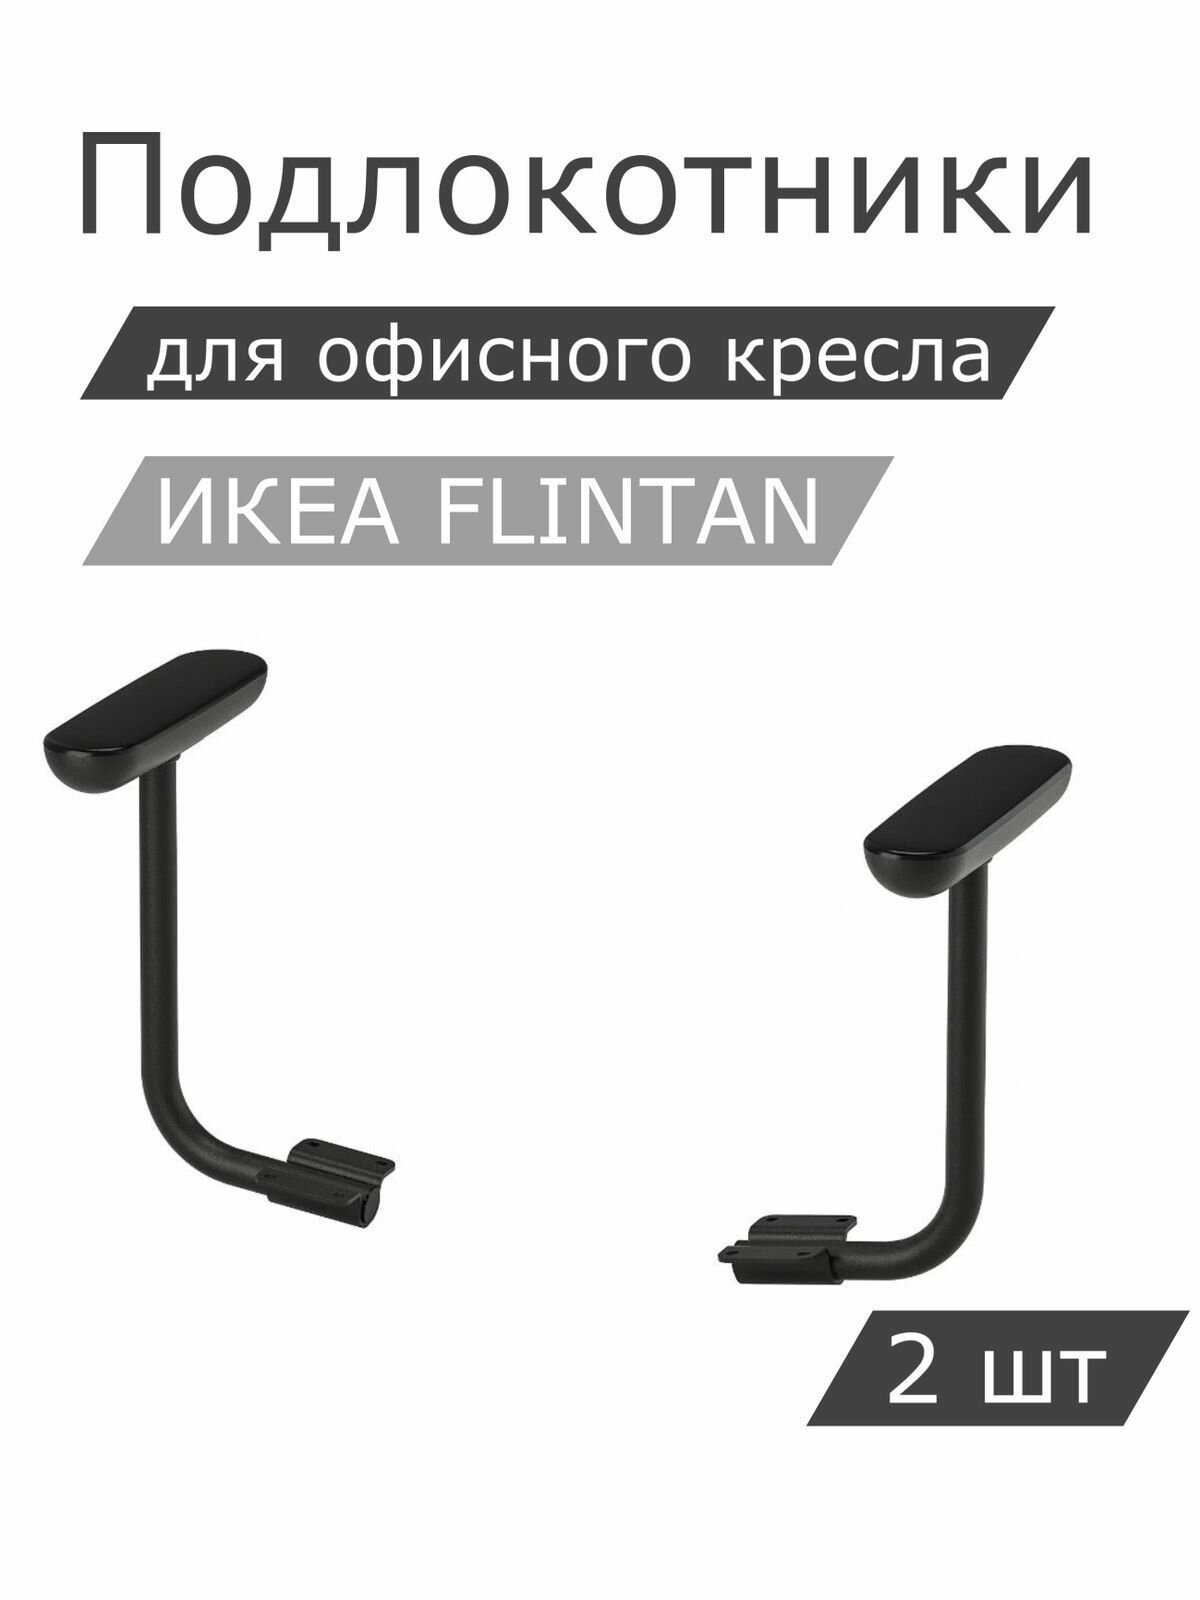 Комплект подлокотников IKEA FLINTAN флинтан, 2шт, черный